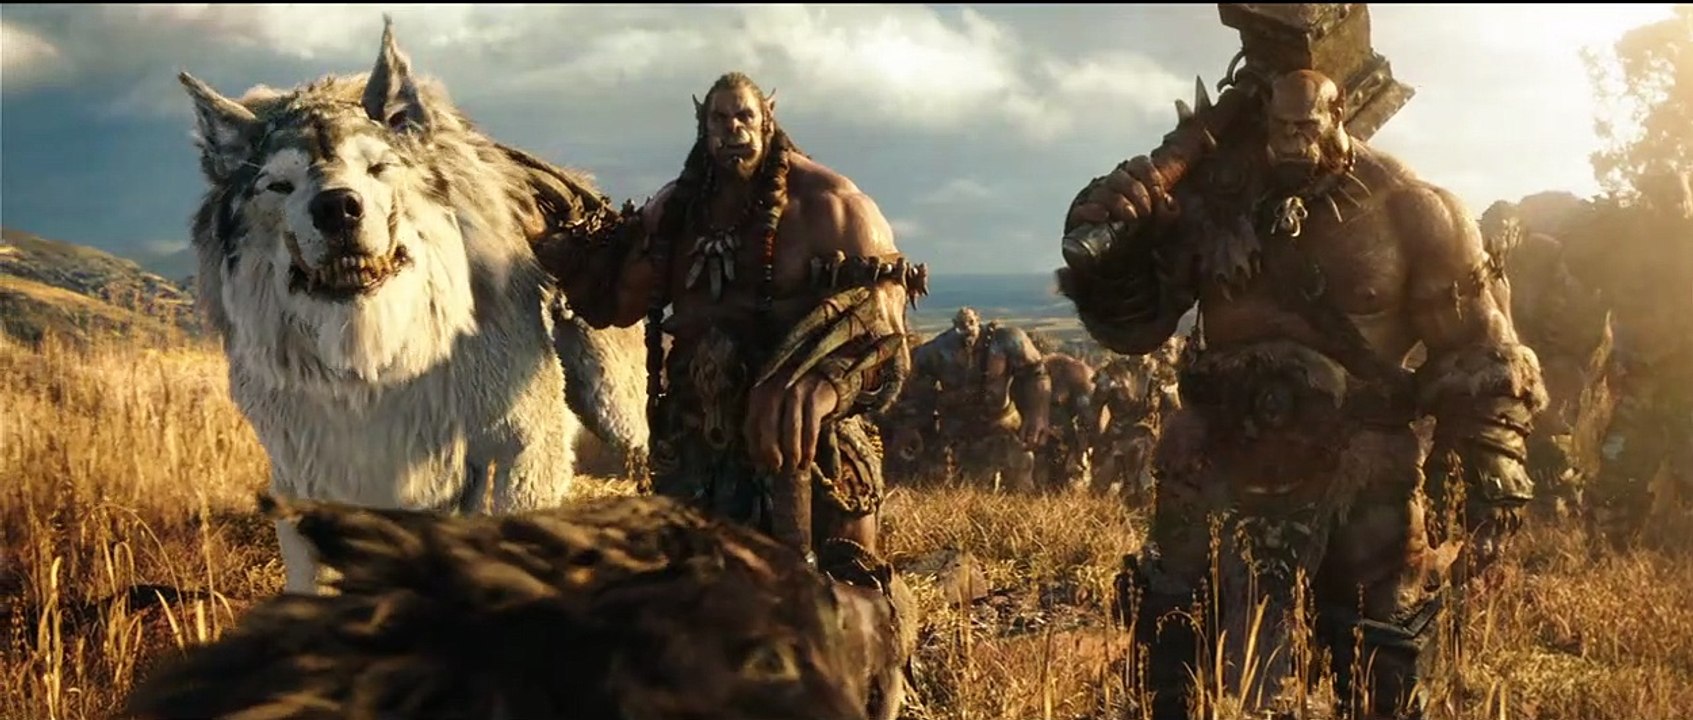 Warcraft: The Beginning Trailer DF